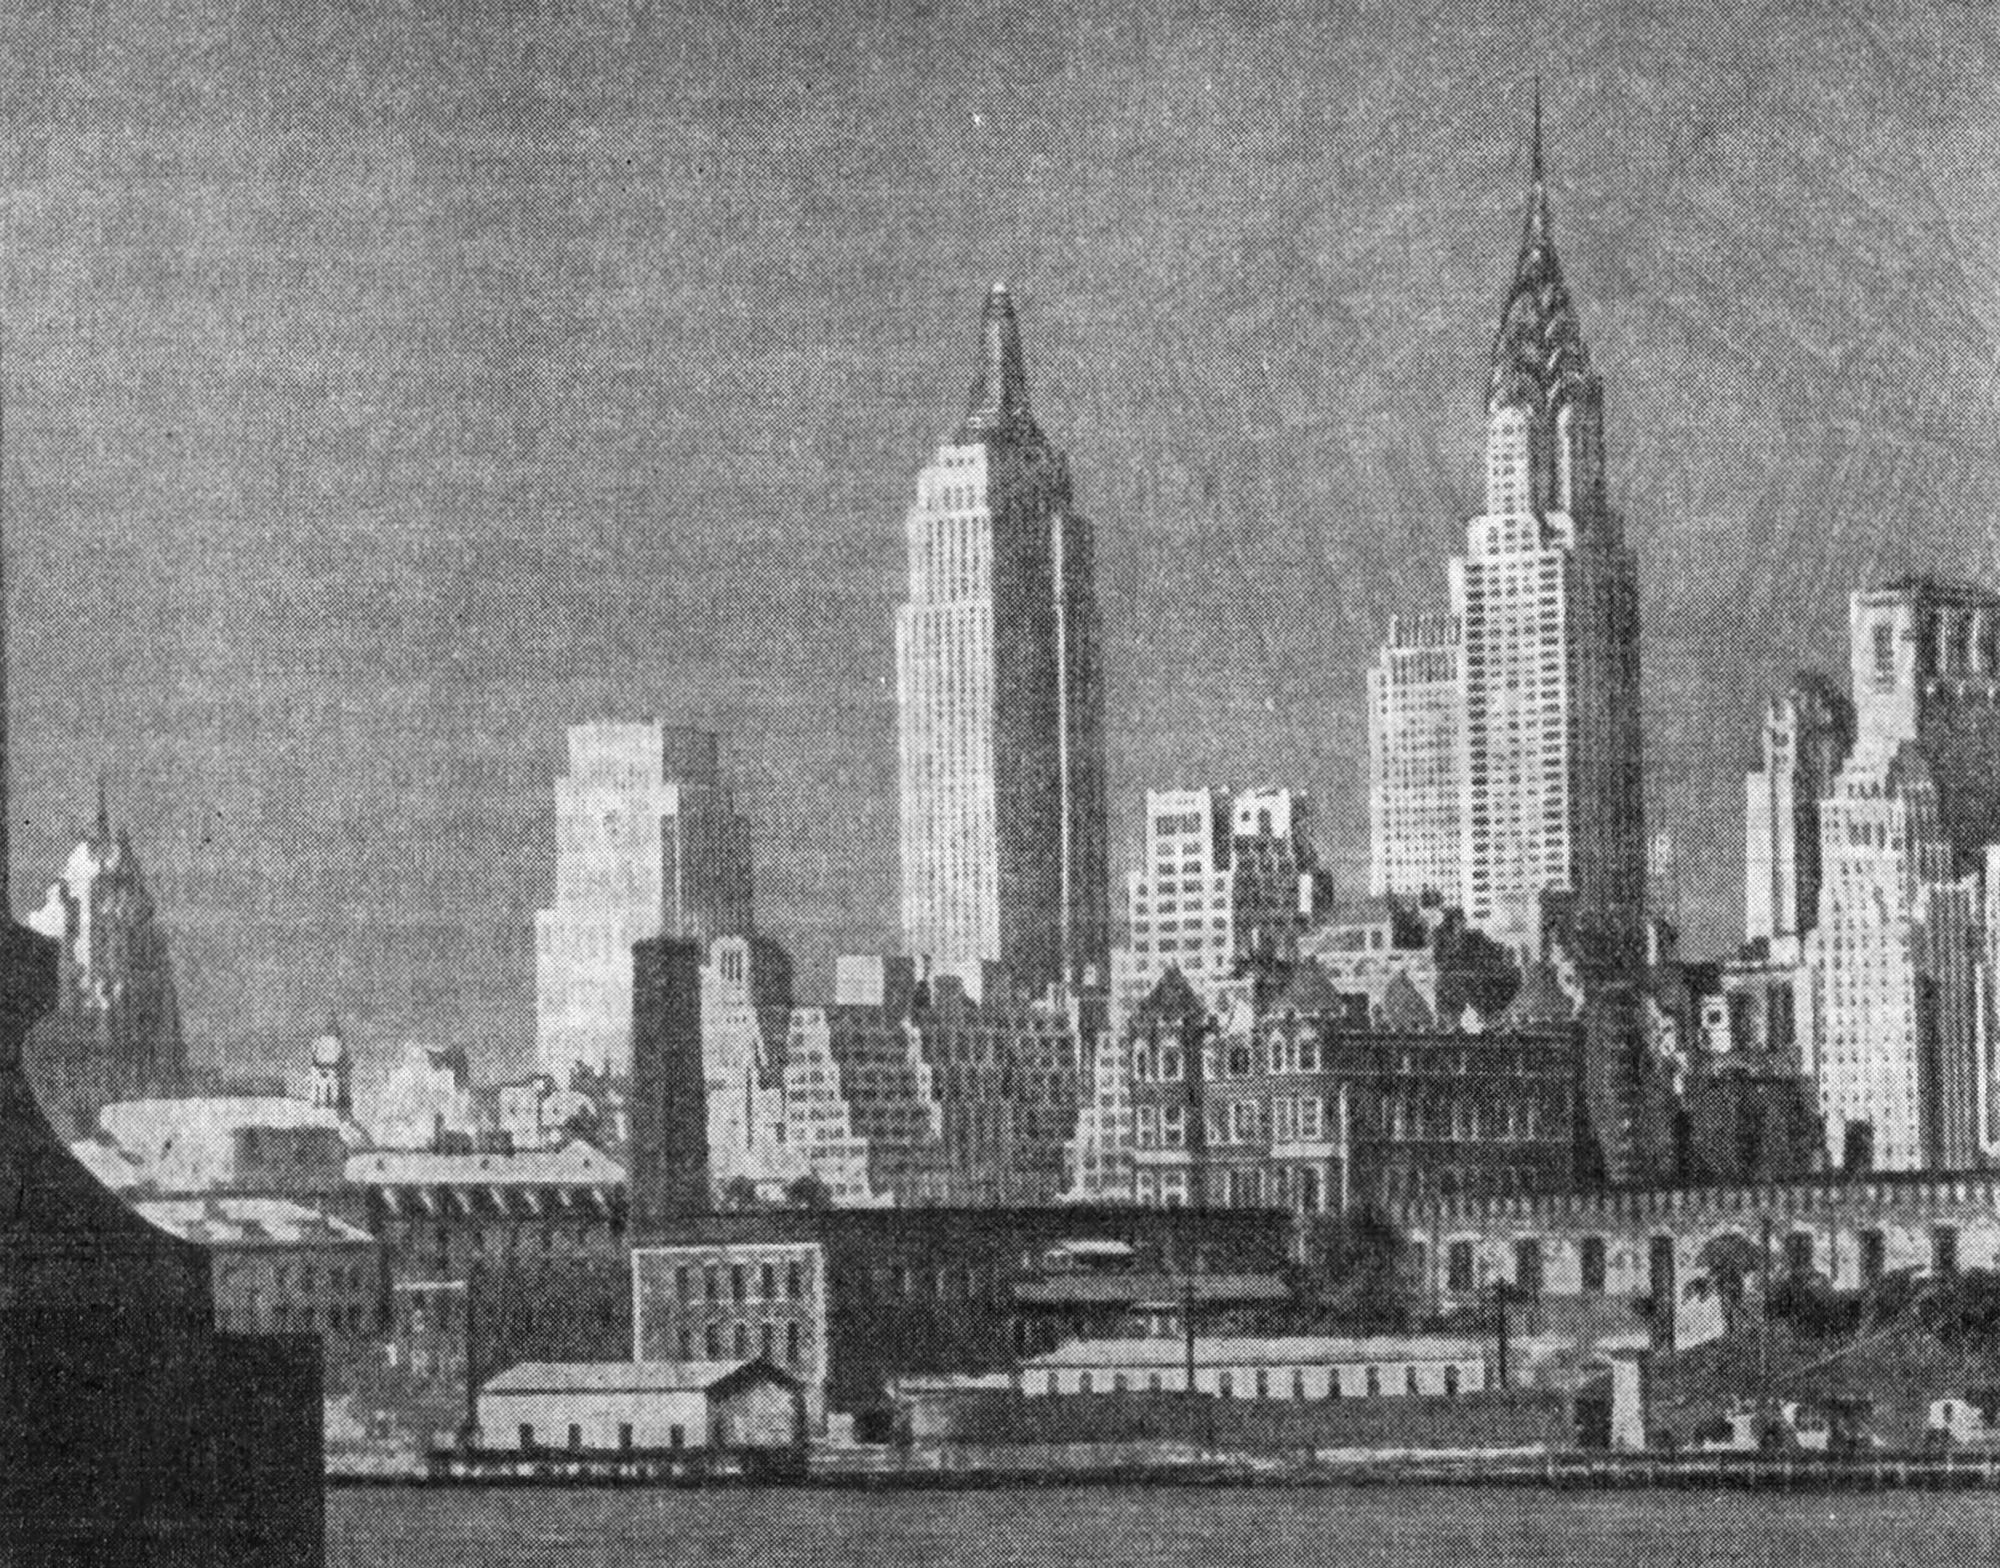 25. Нью-Йорк. «Эмпайр Стэйт билдинг» в панораме Нью-Йорка (в центре), 1931 г. Архитекторы Шрю, Лэмб, Хармон